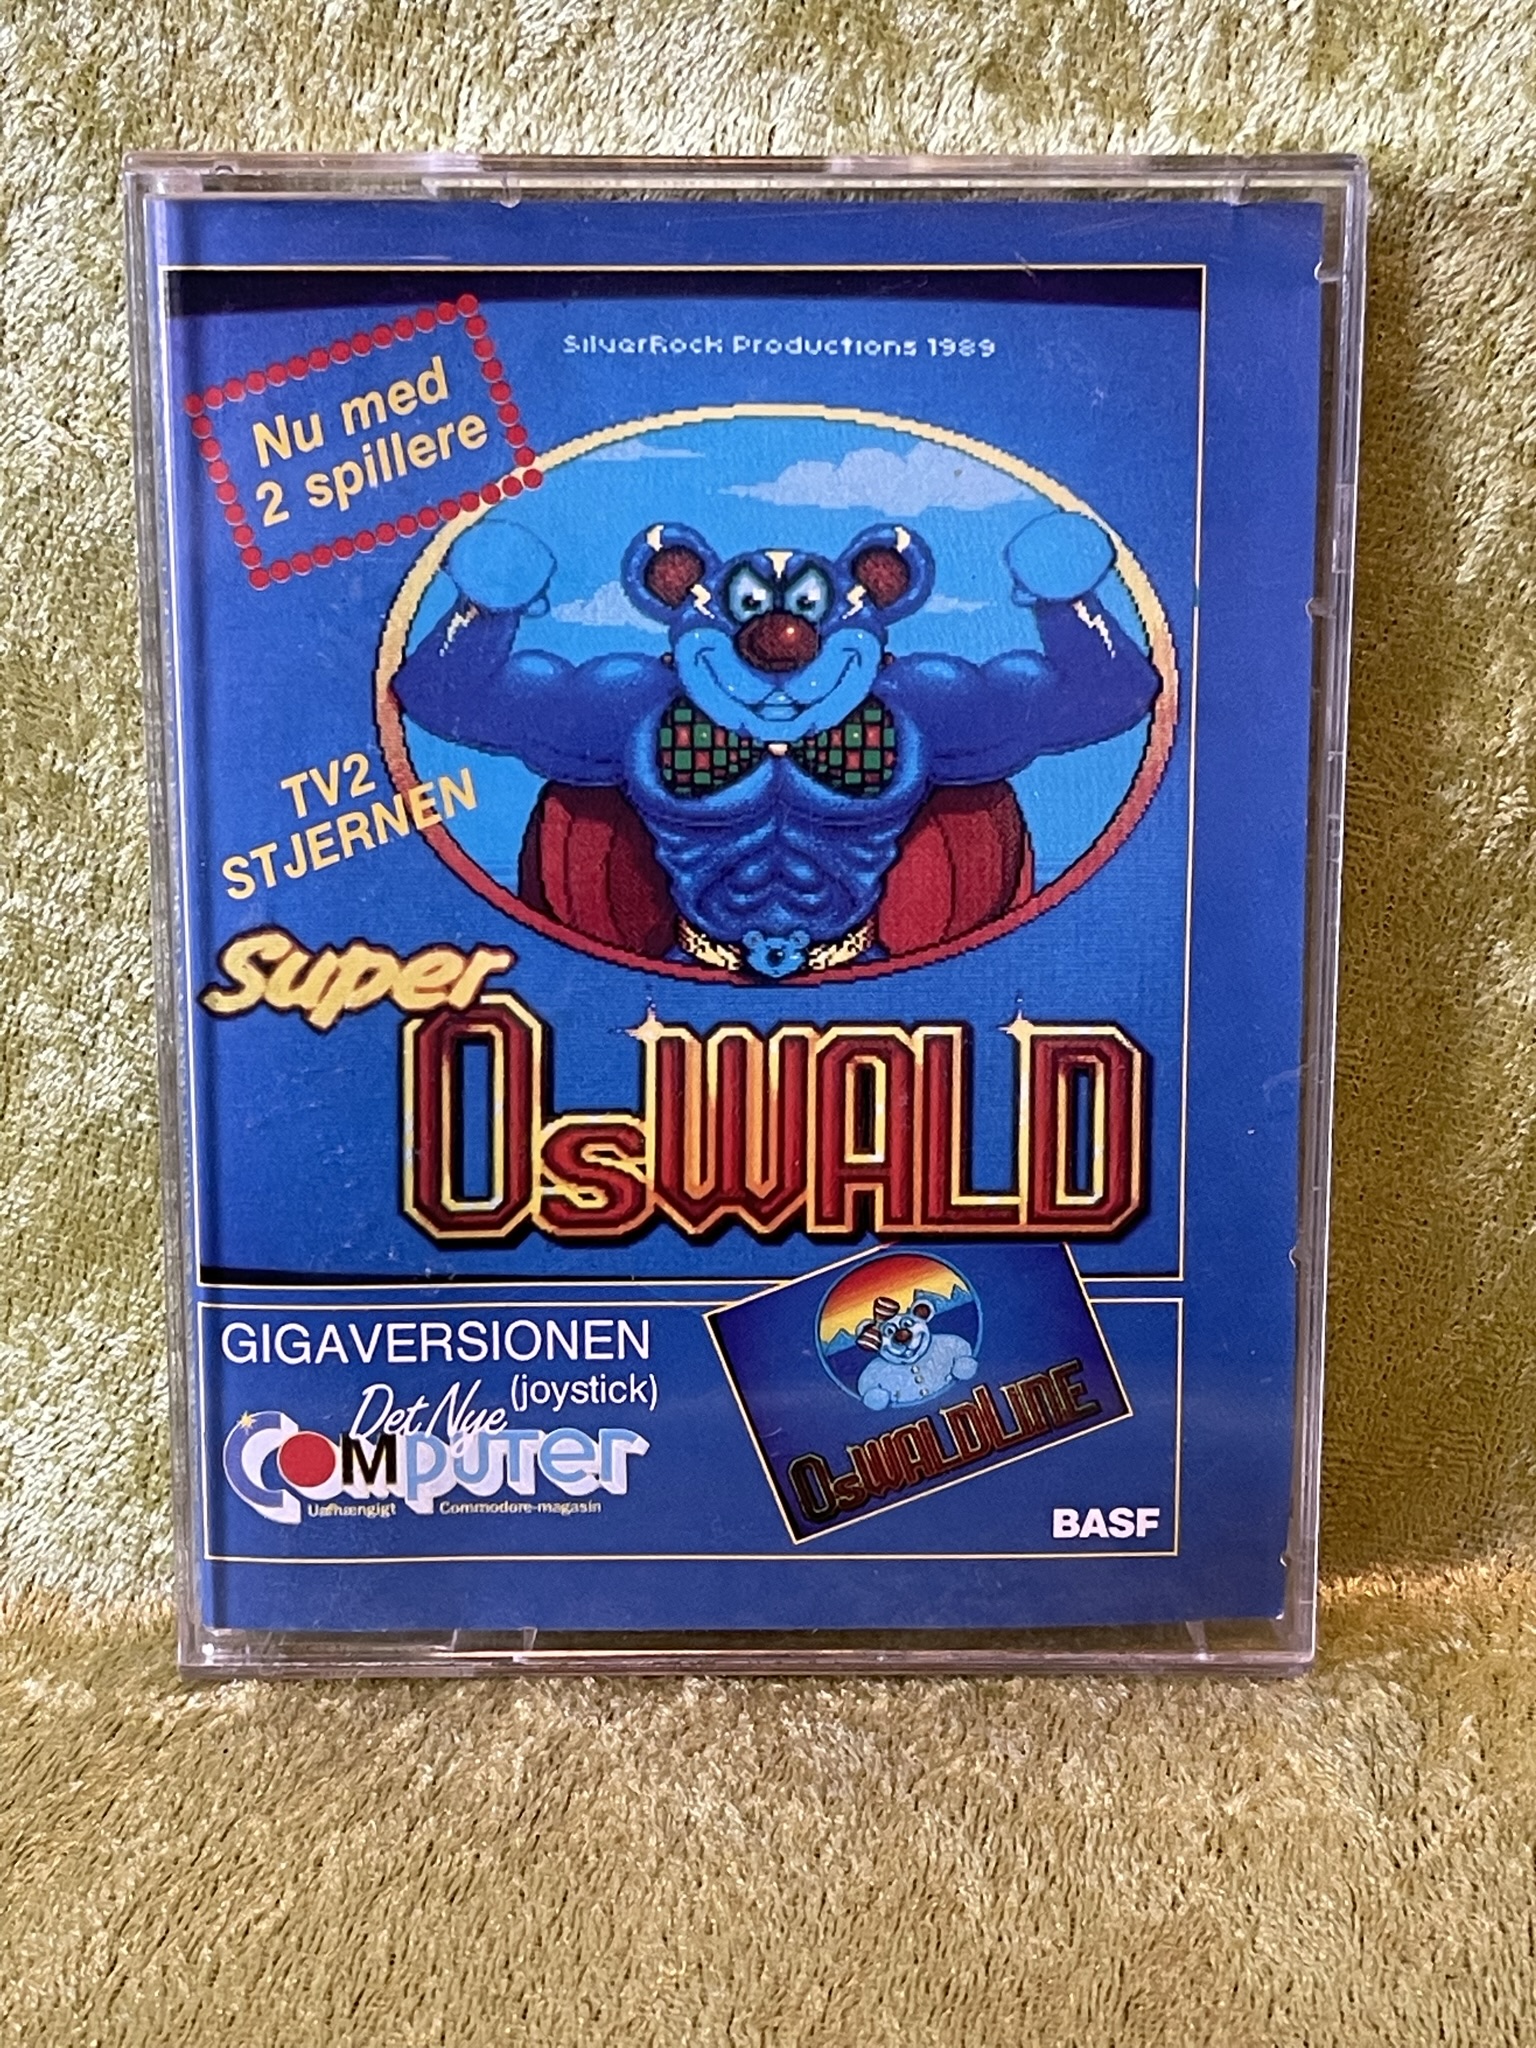 Super Oswald